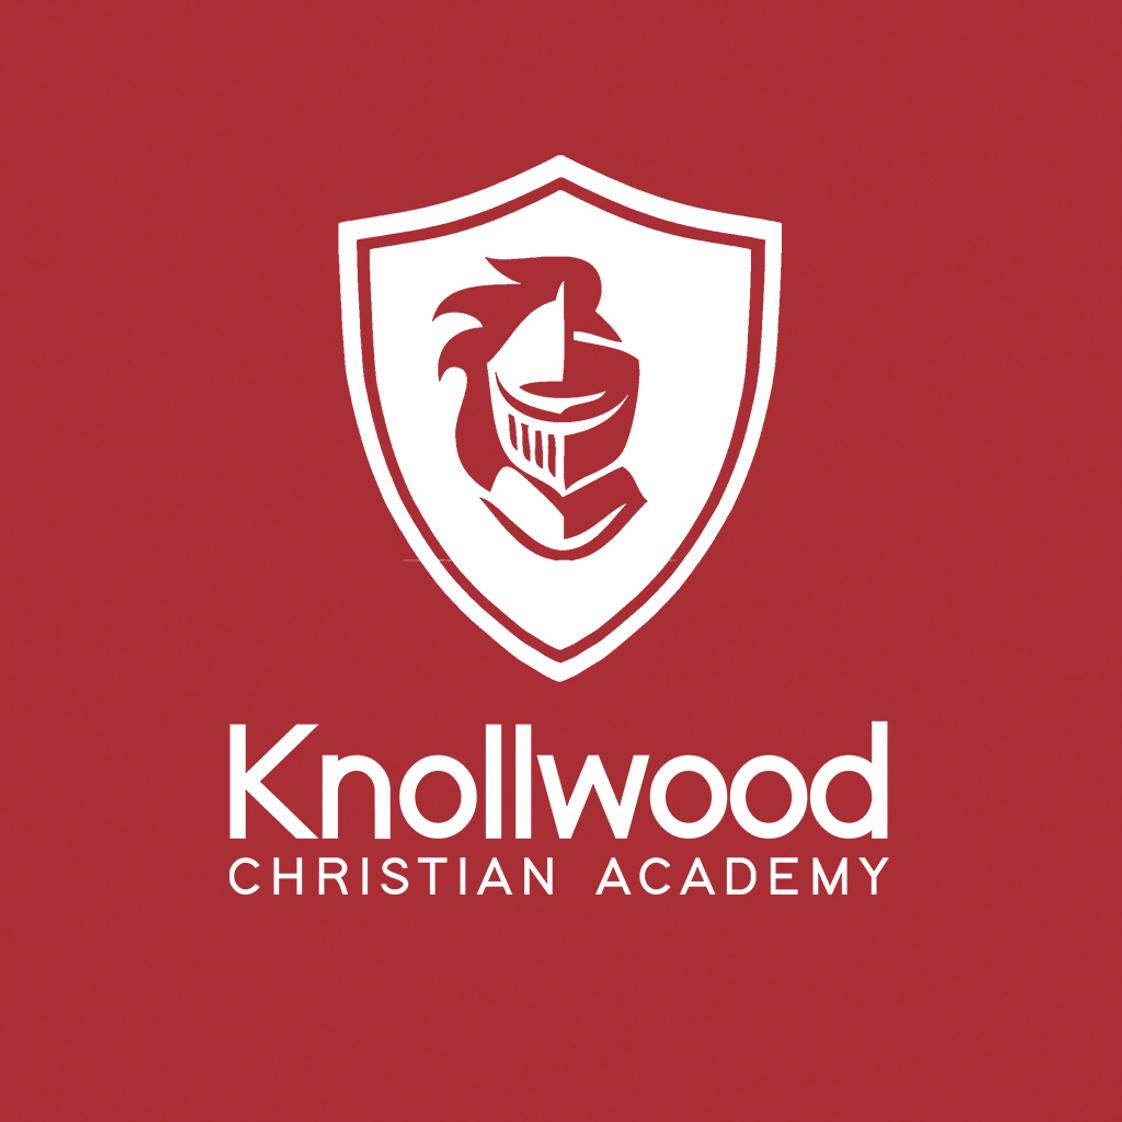 Knollwood Christian Academy Photo - Knollwood Christian Academy | Mobile, AL